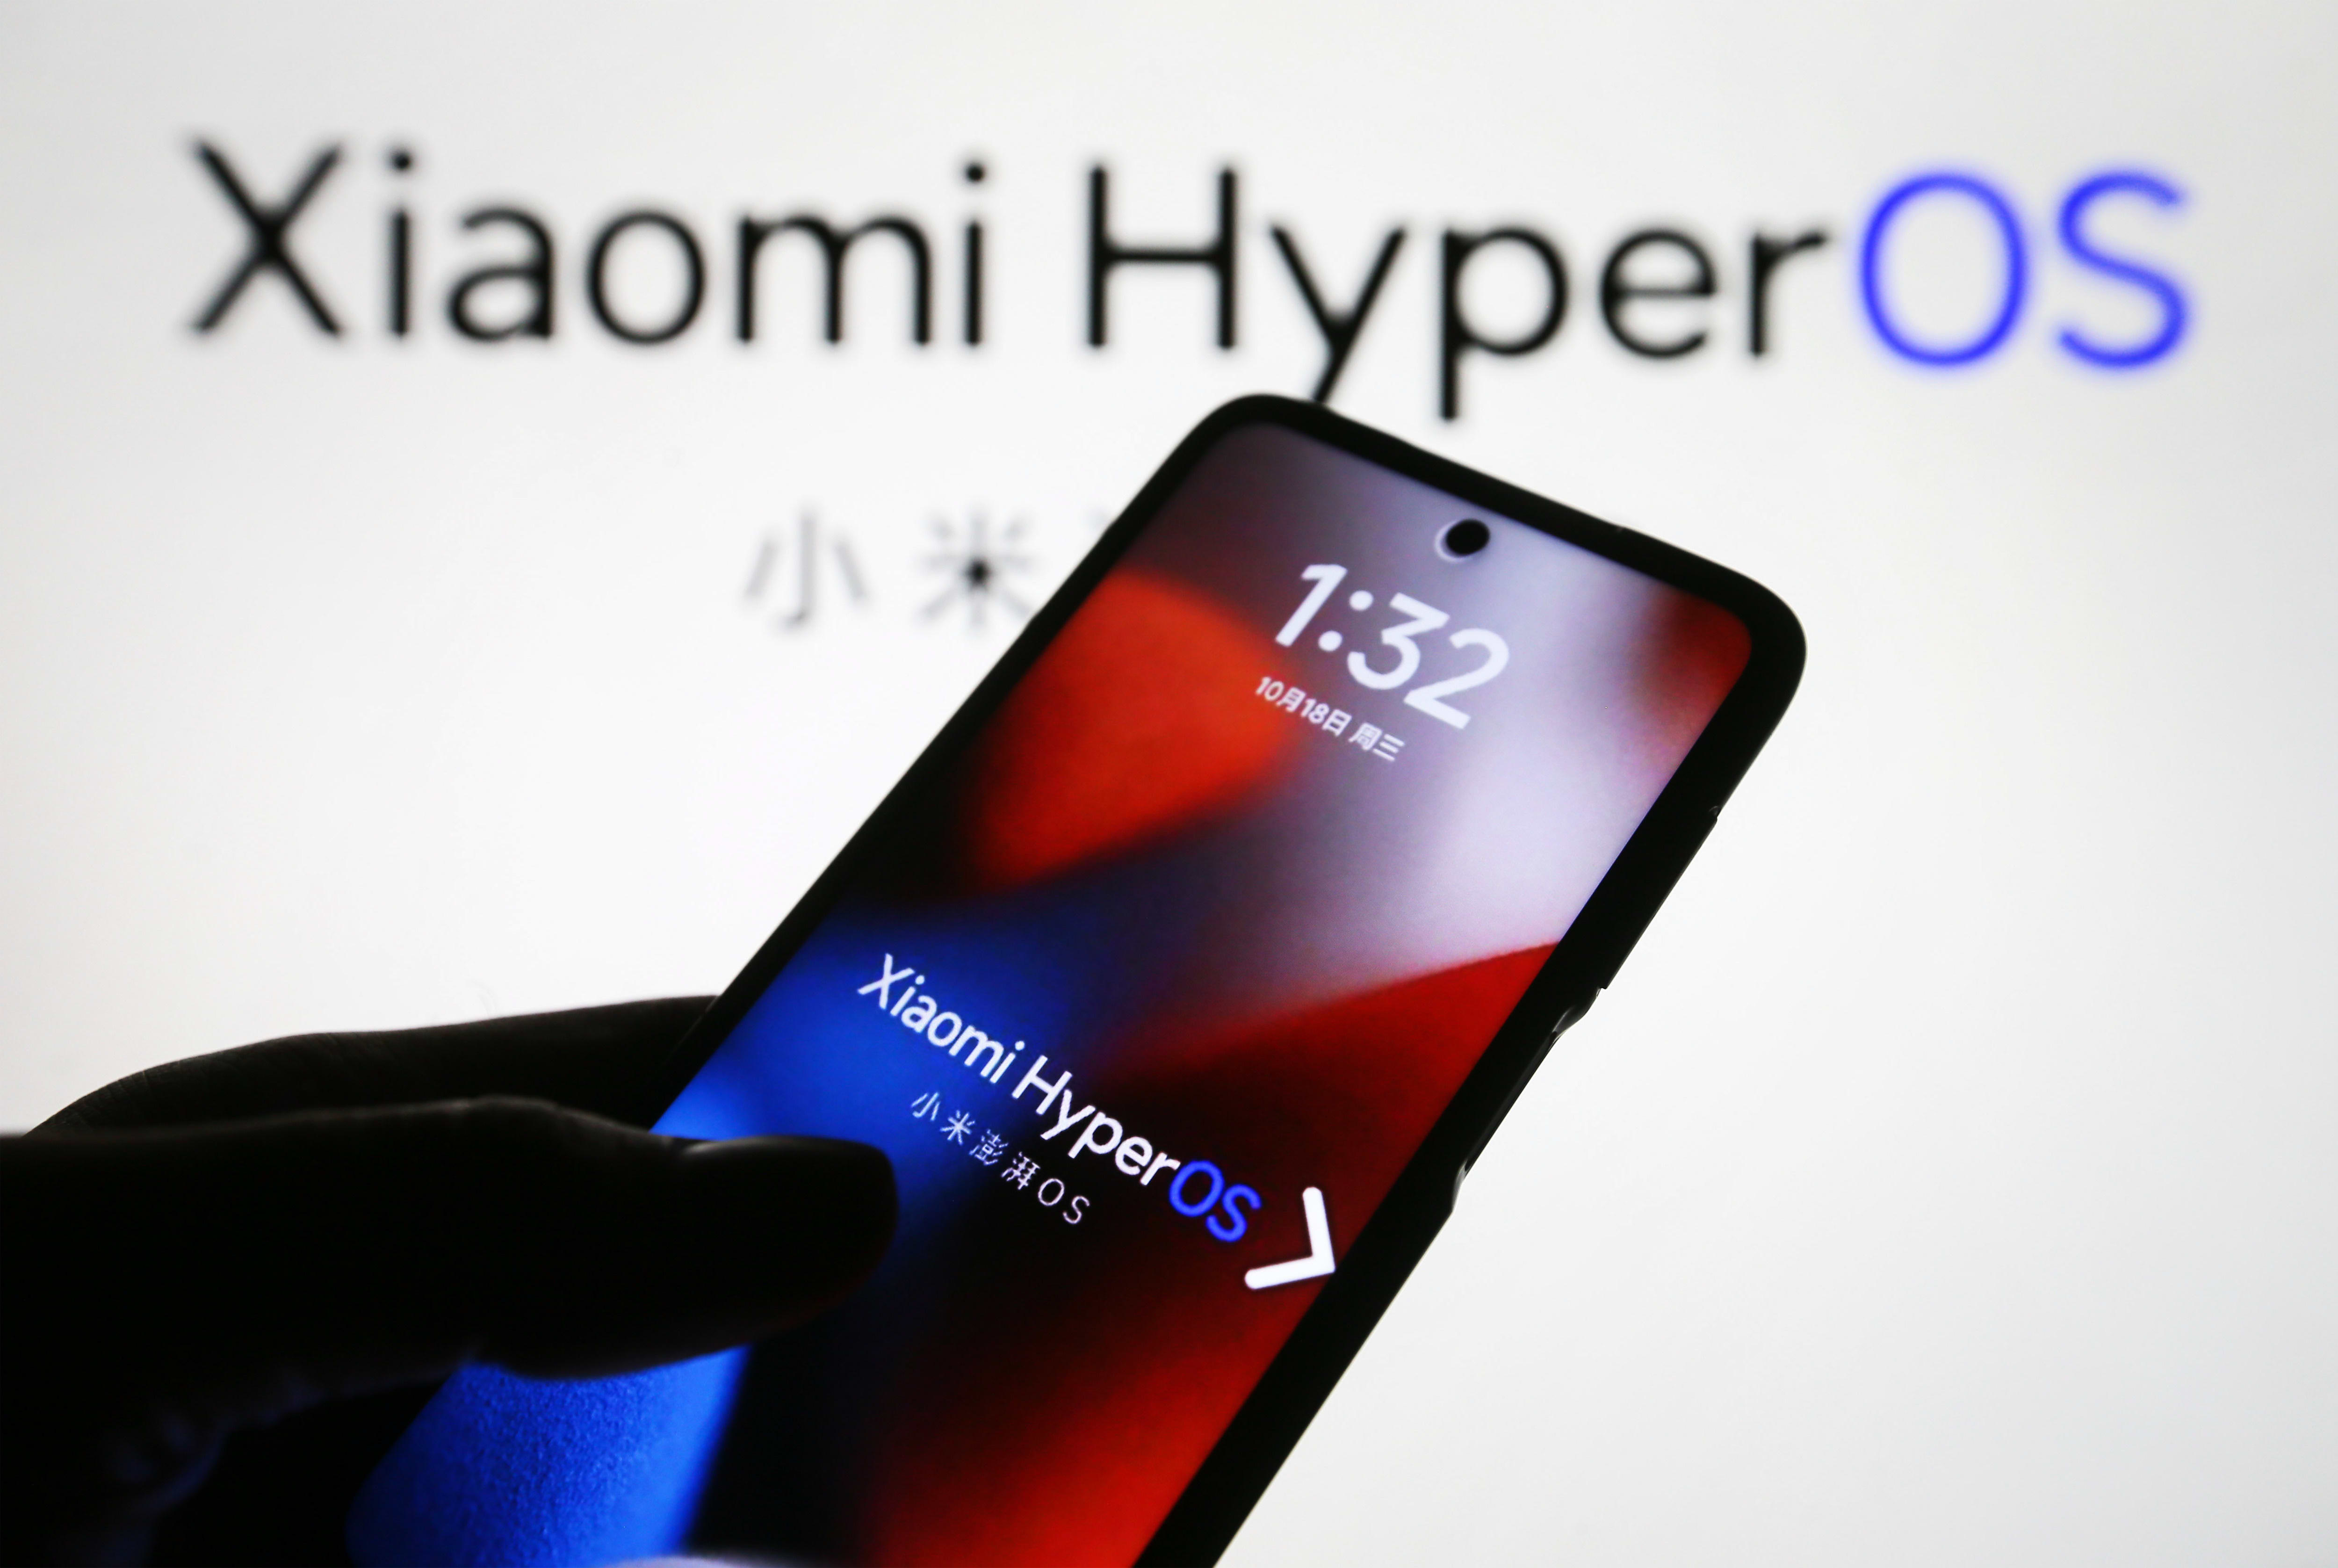 تطلق شركة الهواتف الذكية الصينية Xiaomi HyperOS لأنها تخطط لسيارة